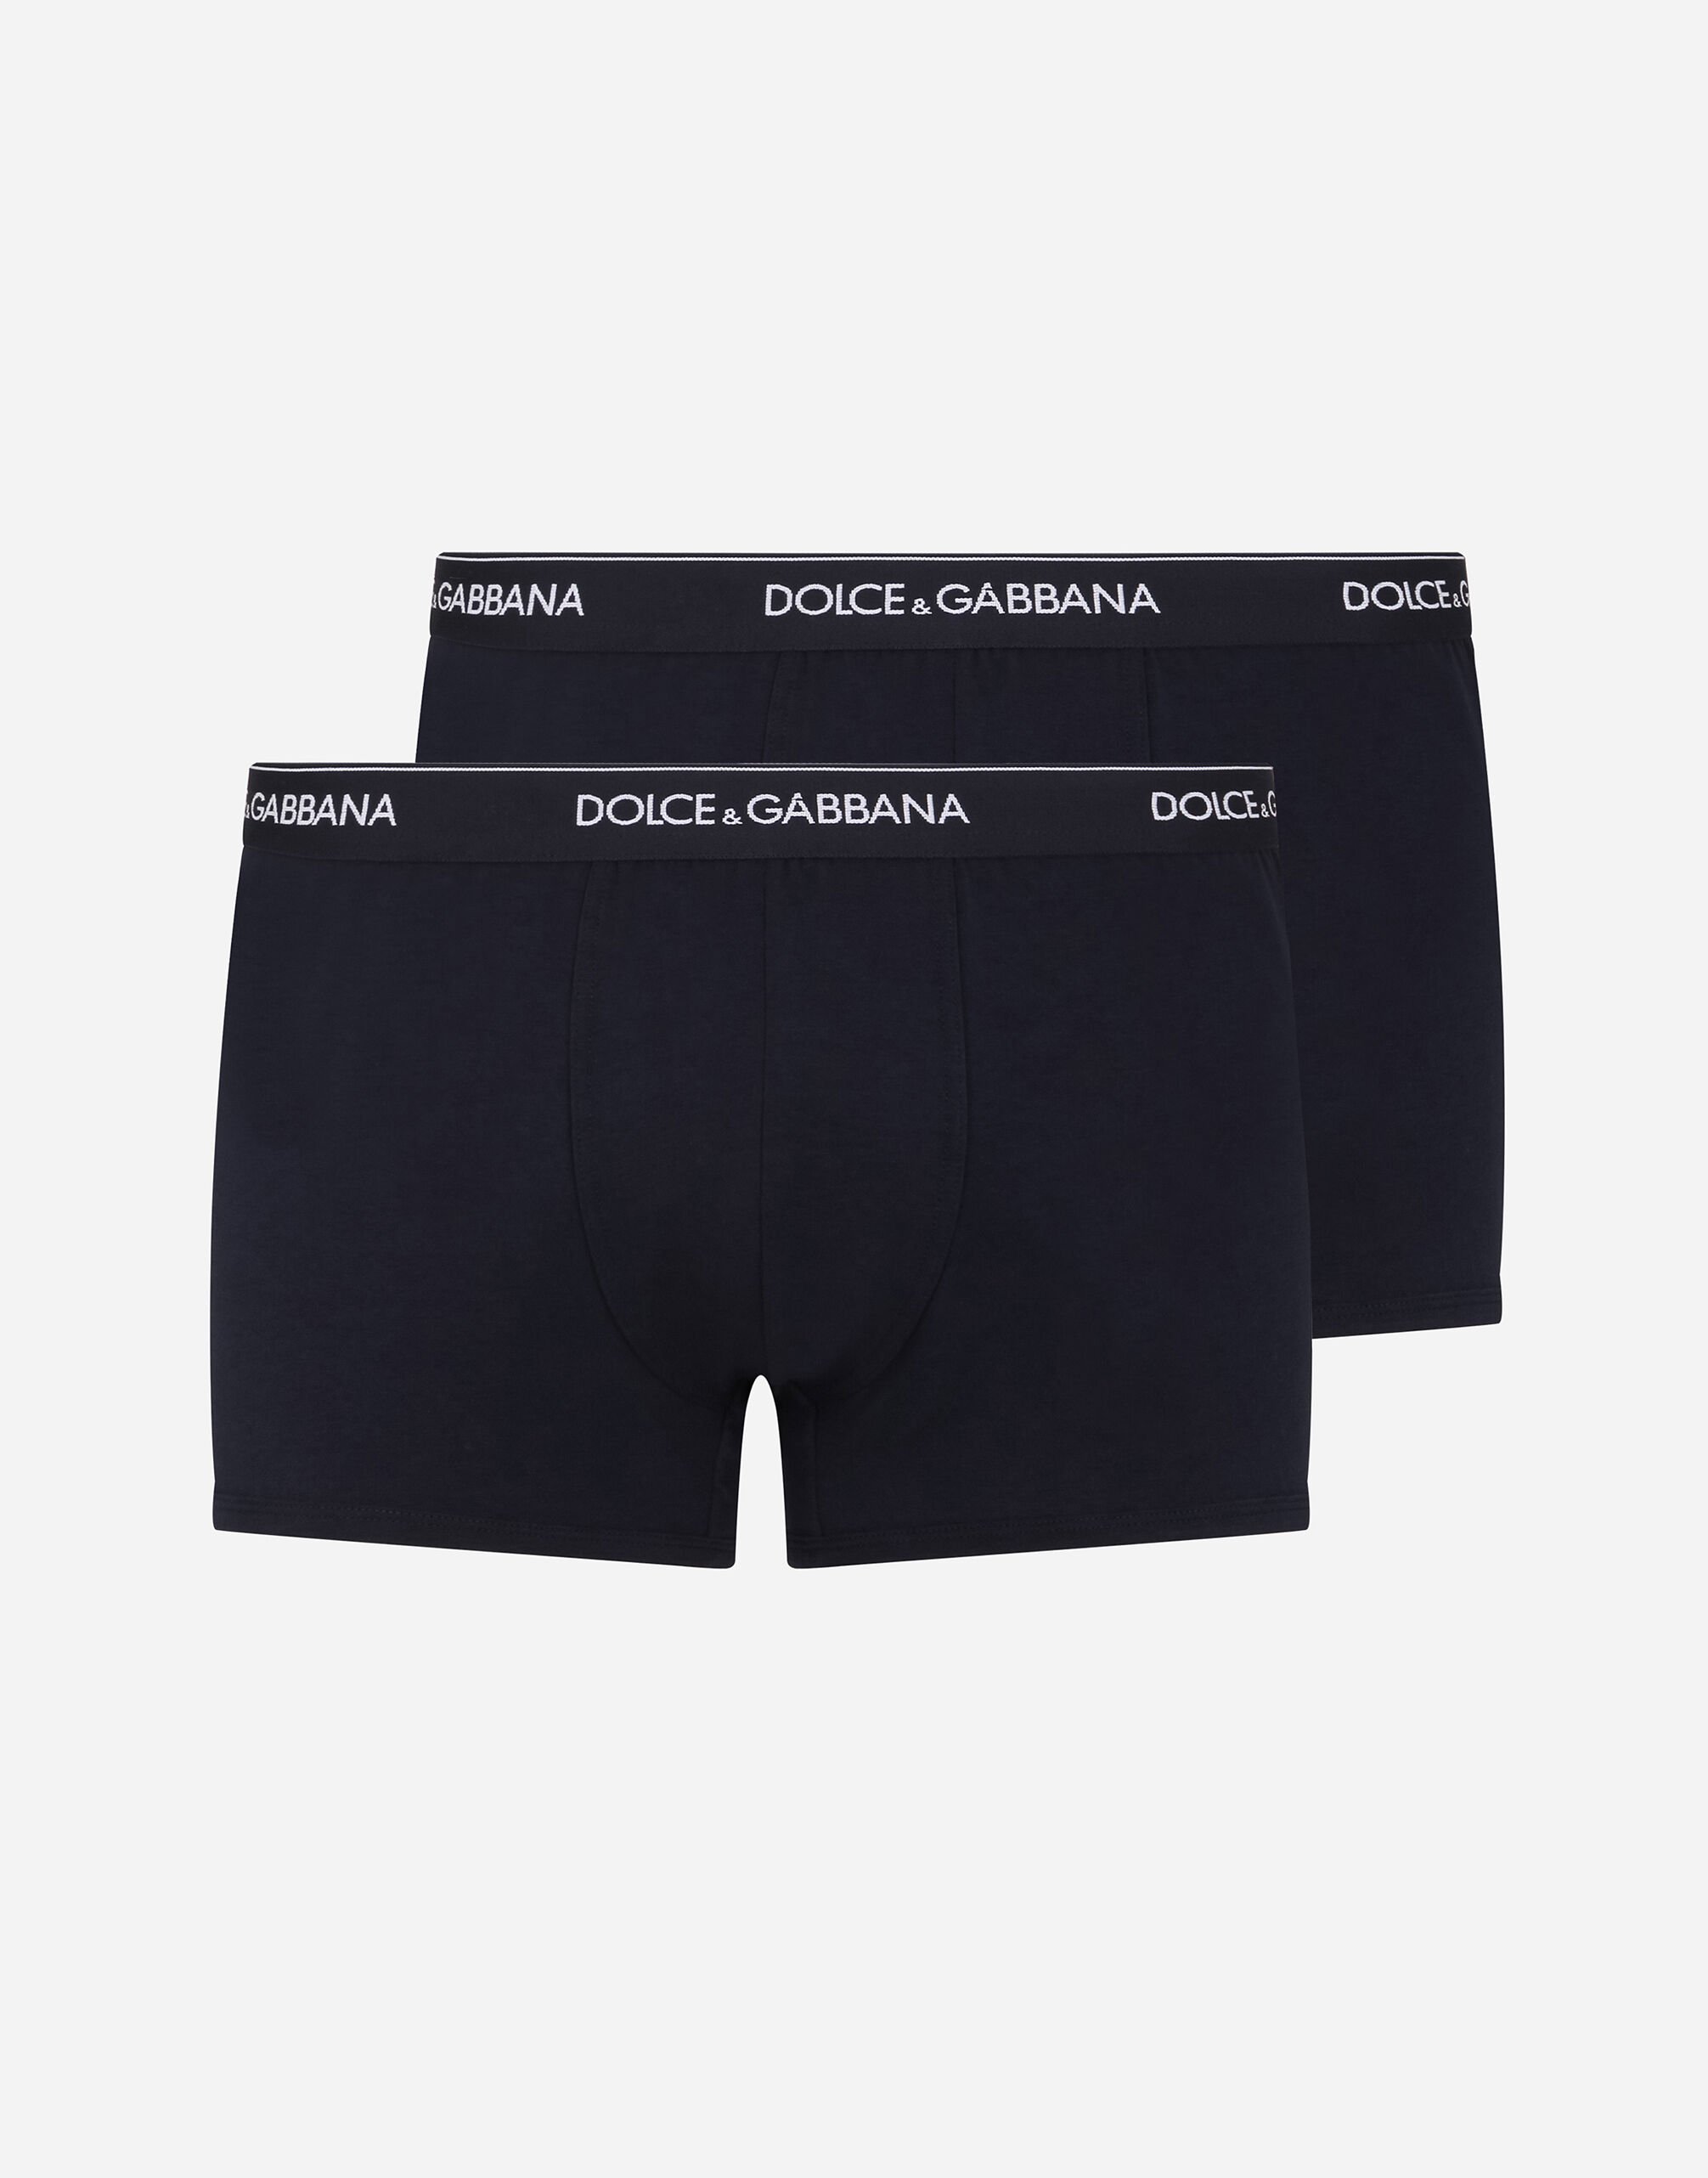 Dolce & Gabbana Pack de 2 bóxers regular de algodón elástico Negro M9C03JONN95